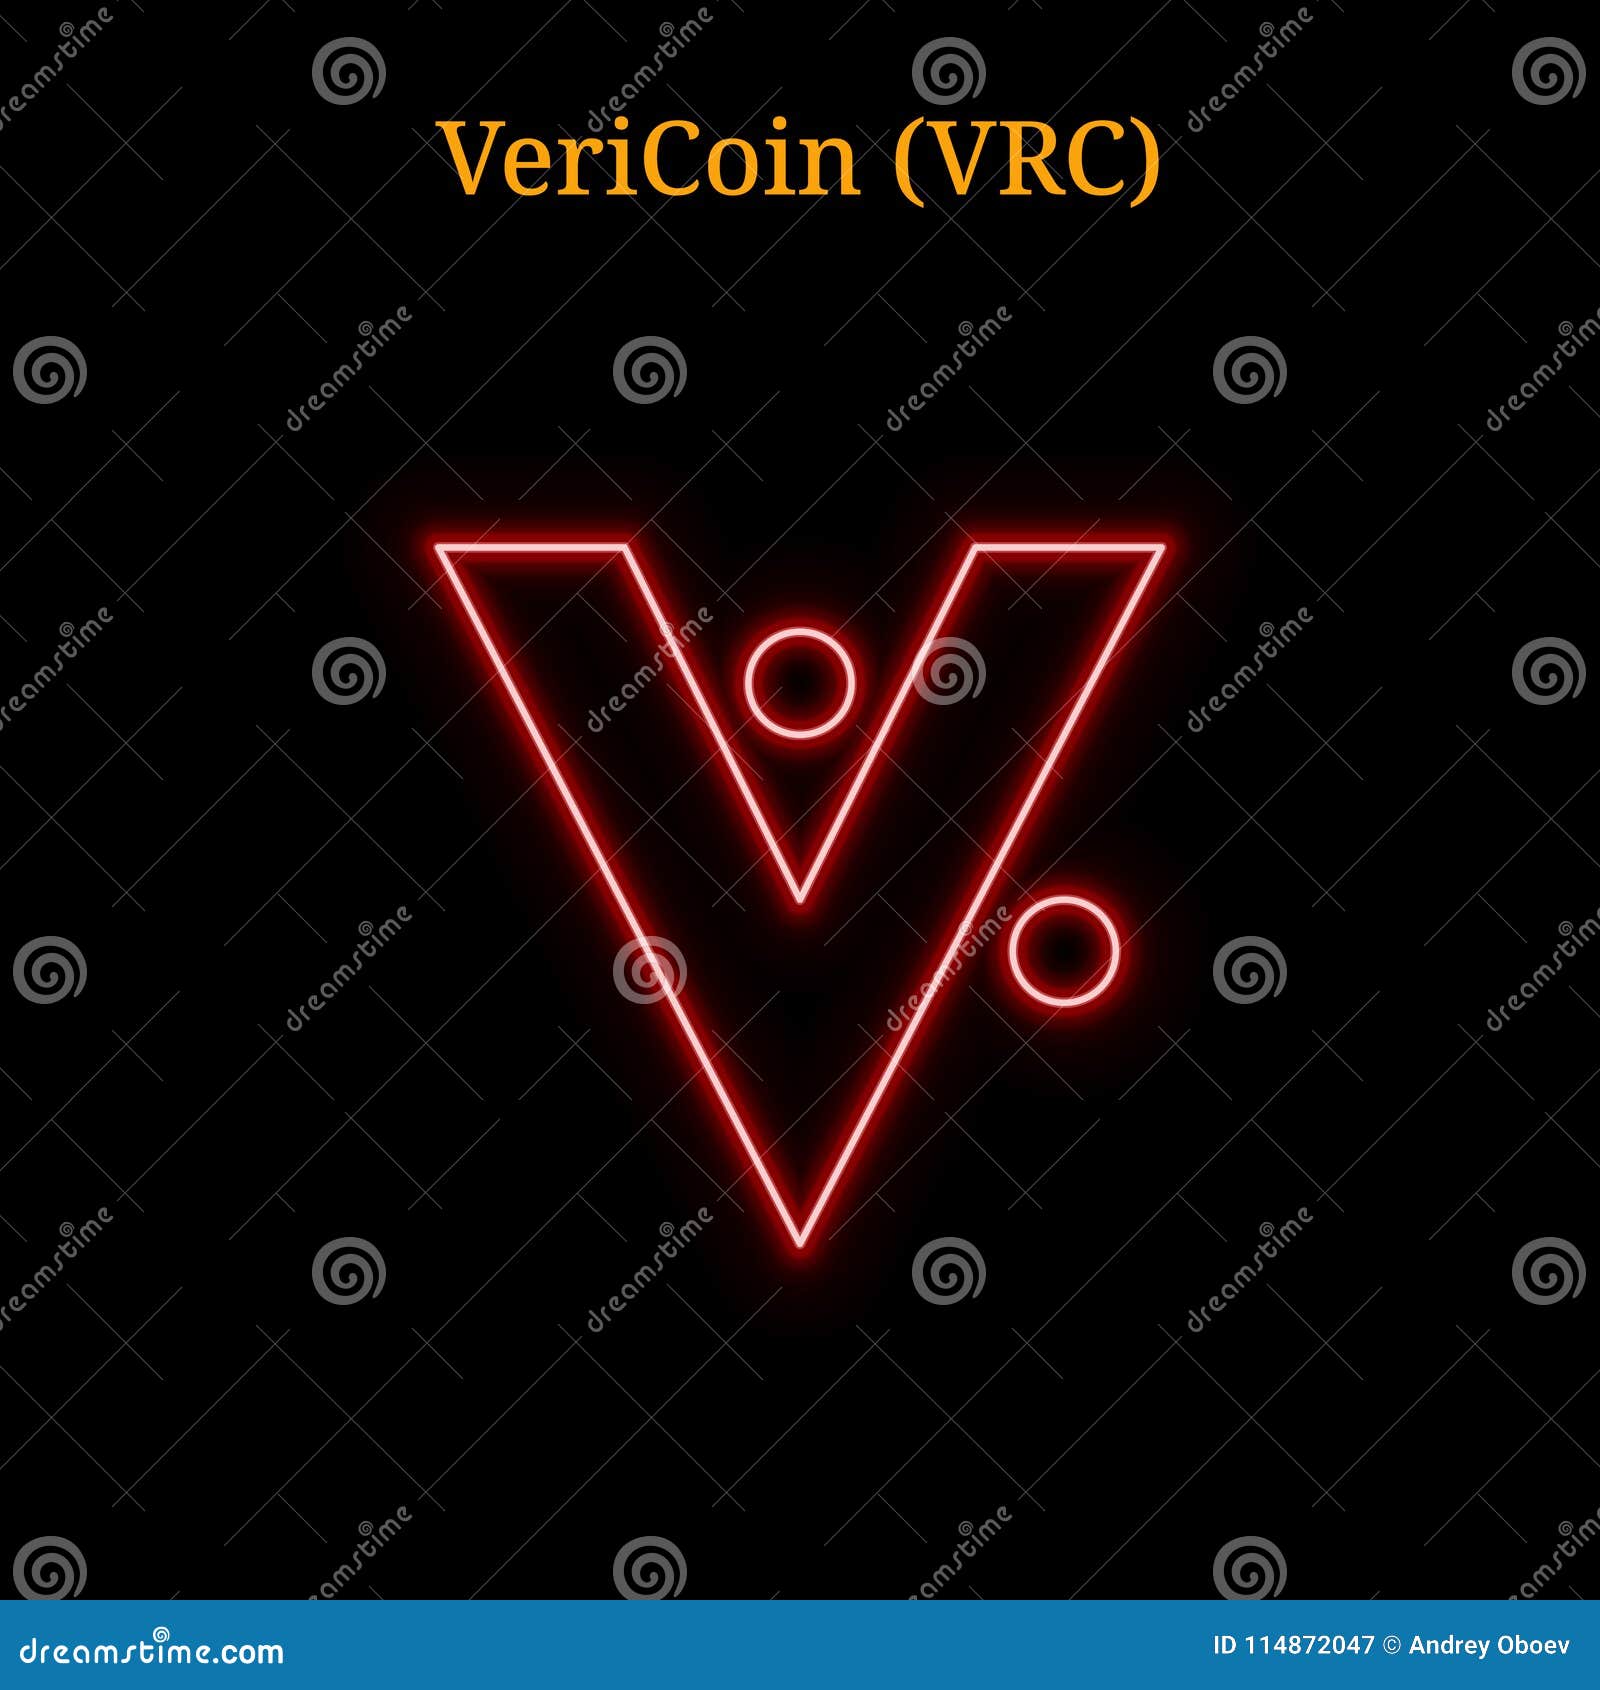 vrc crypto coin